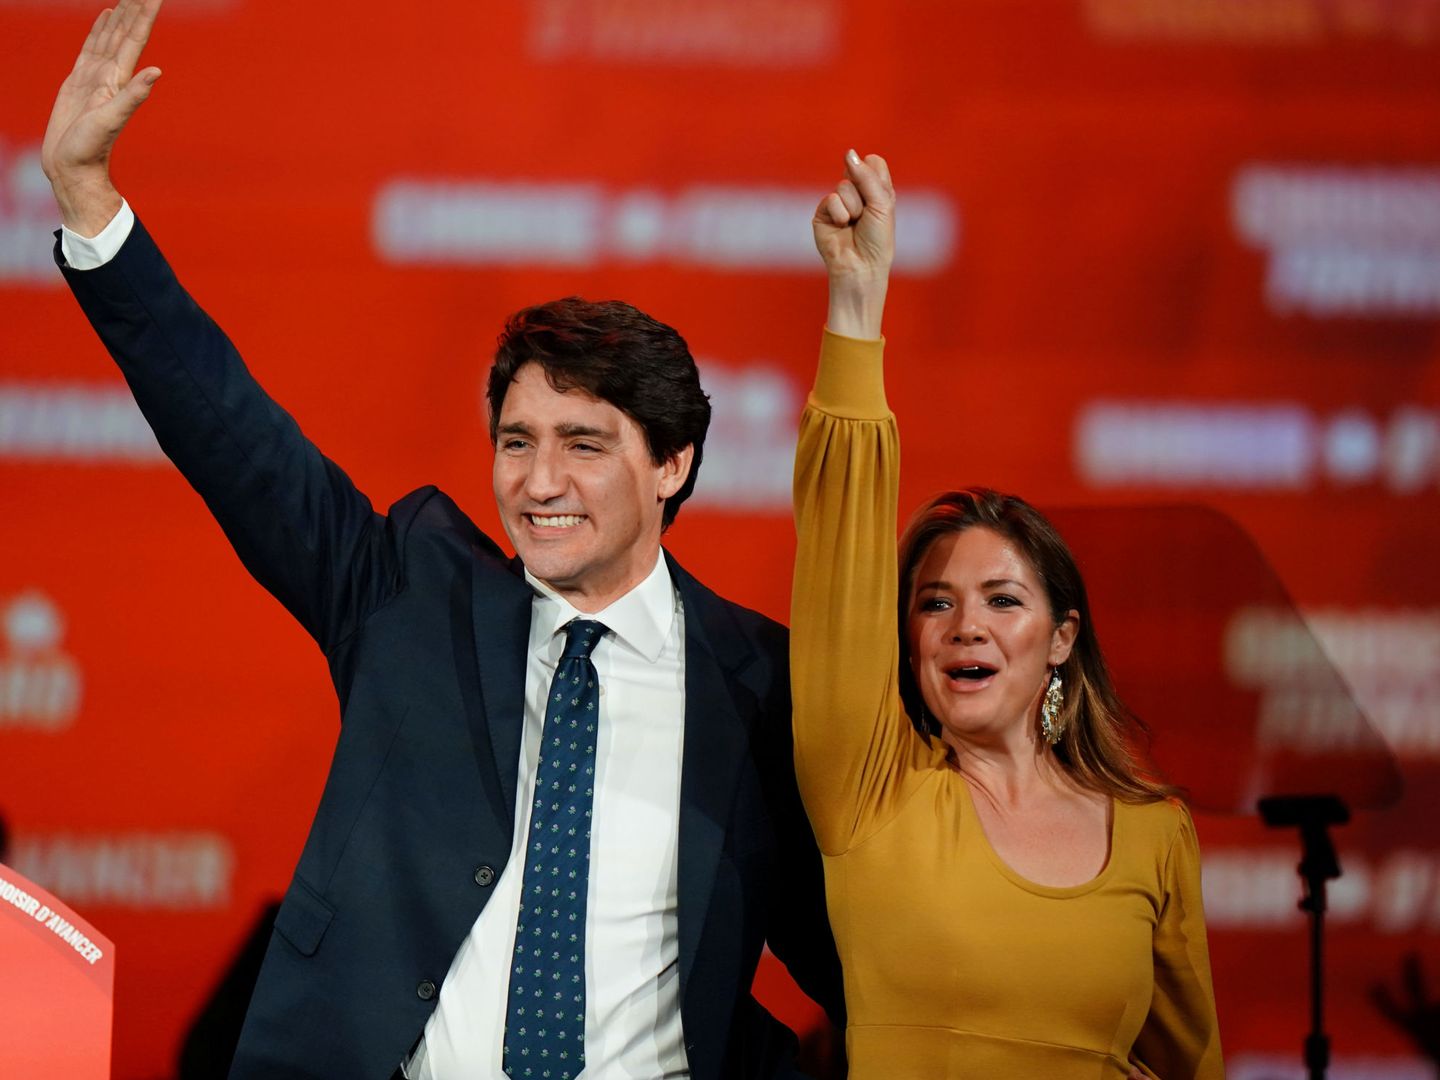 Justin Trudeau, con su mujer, en una imagen de archivo. (Reuters)